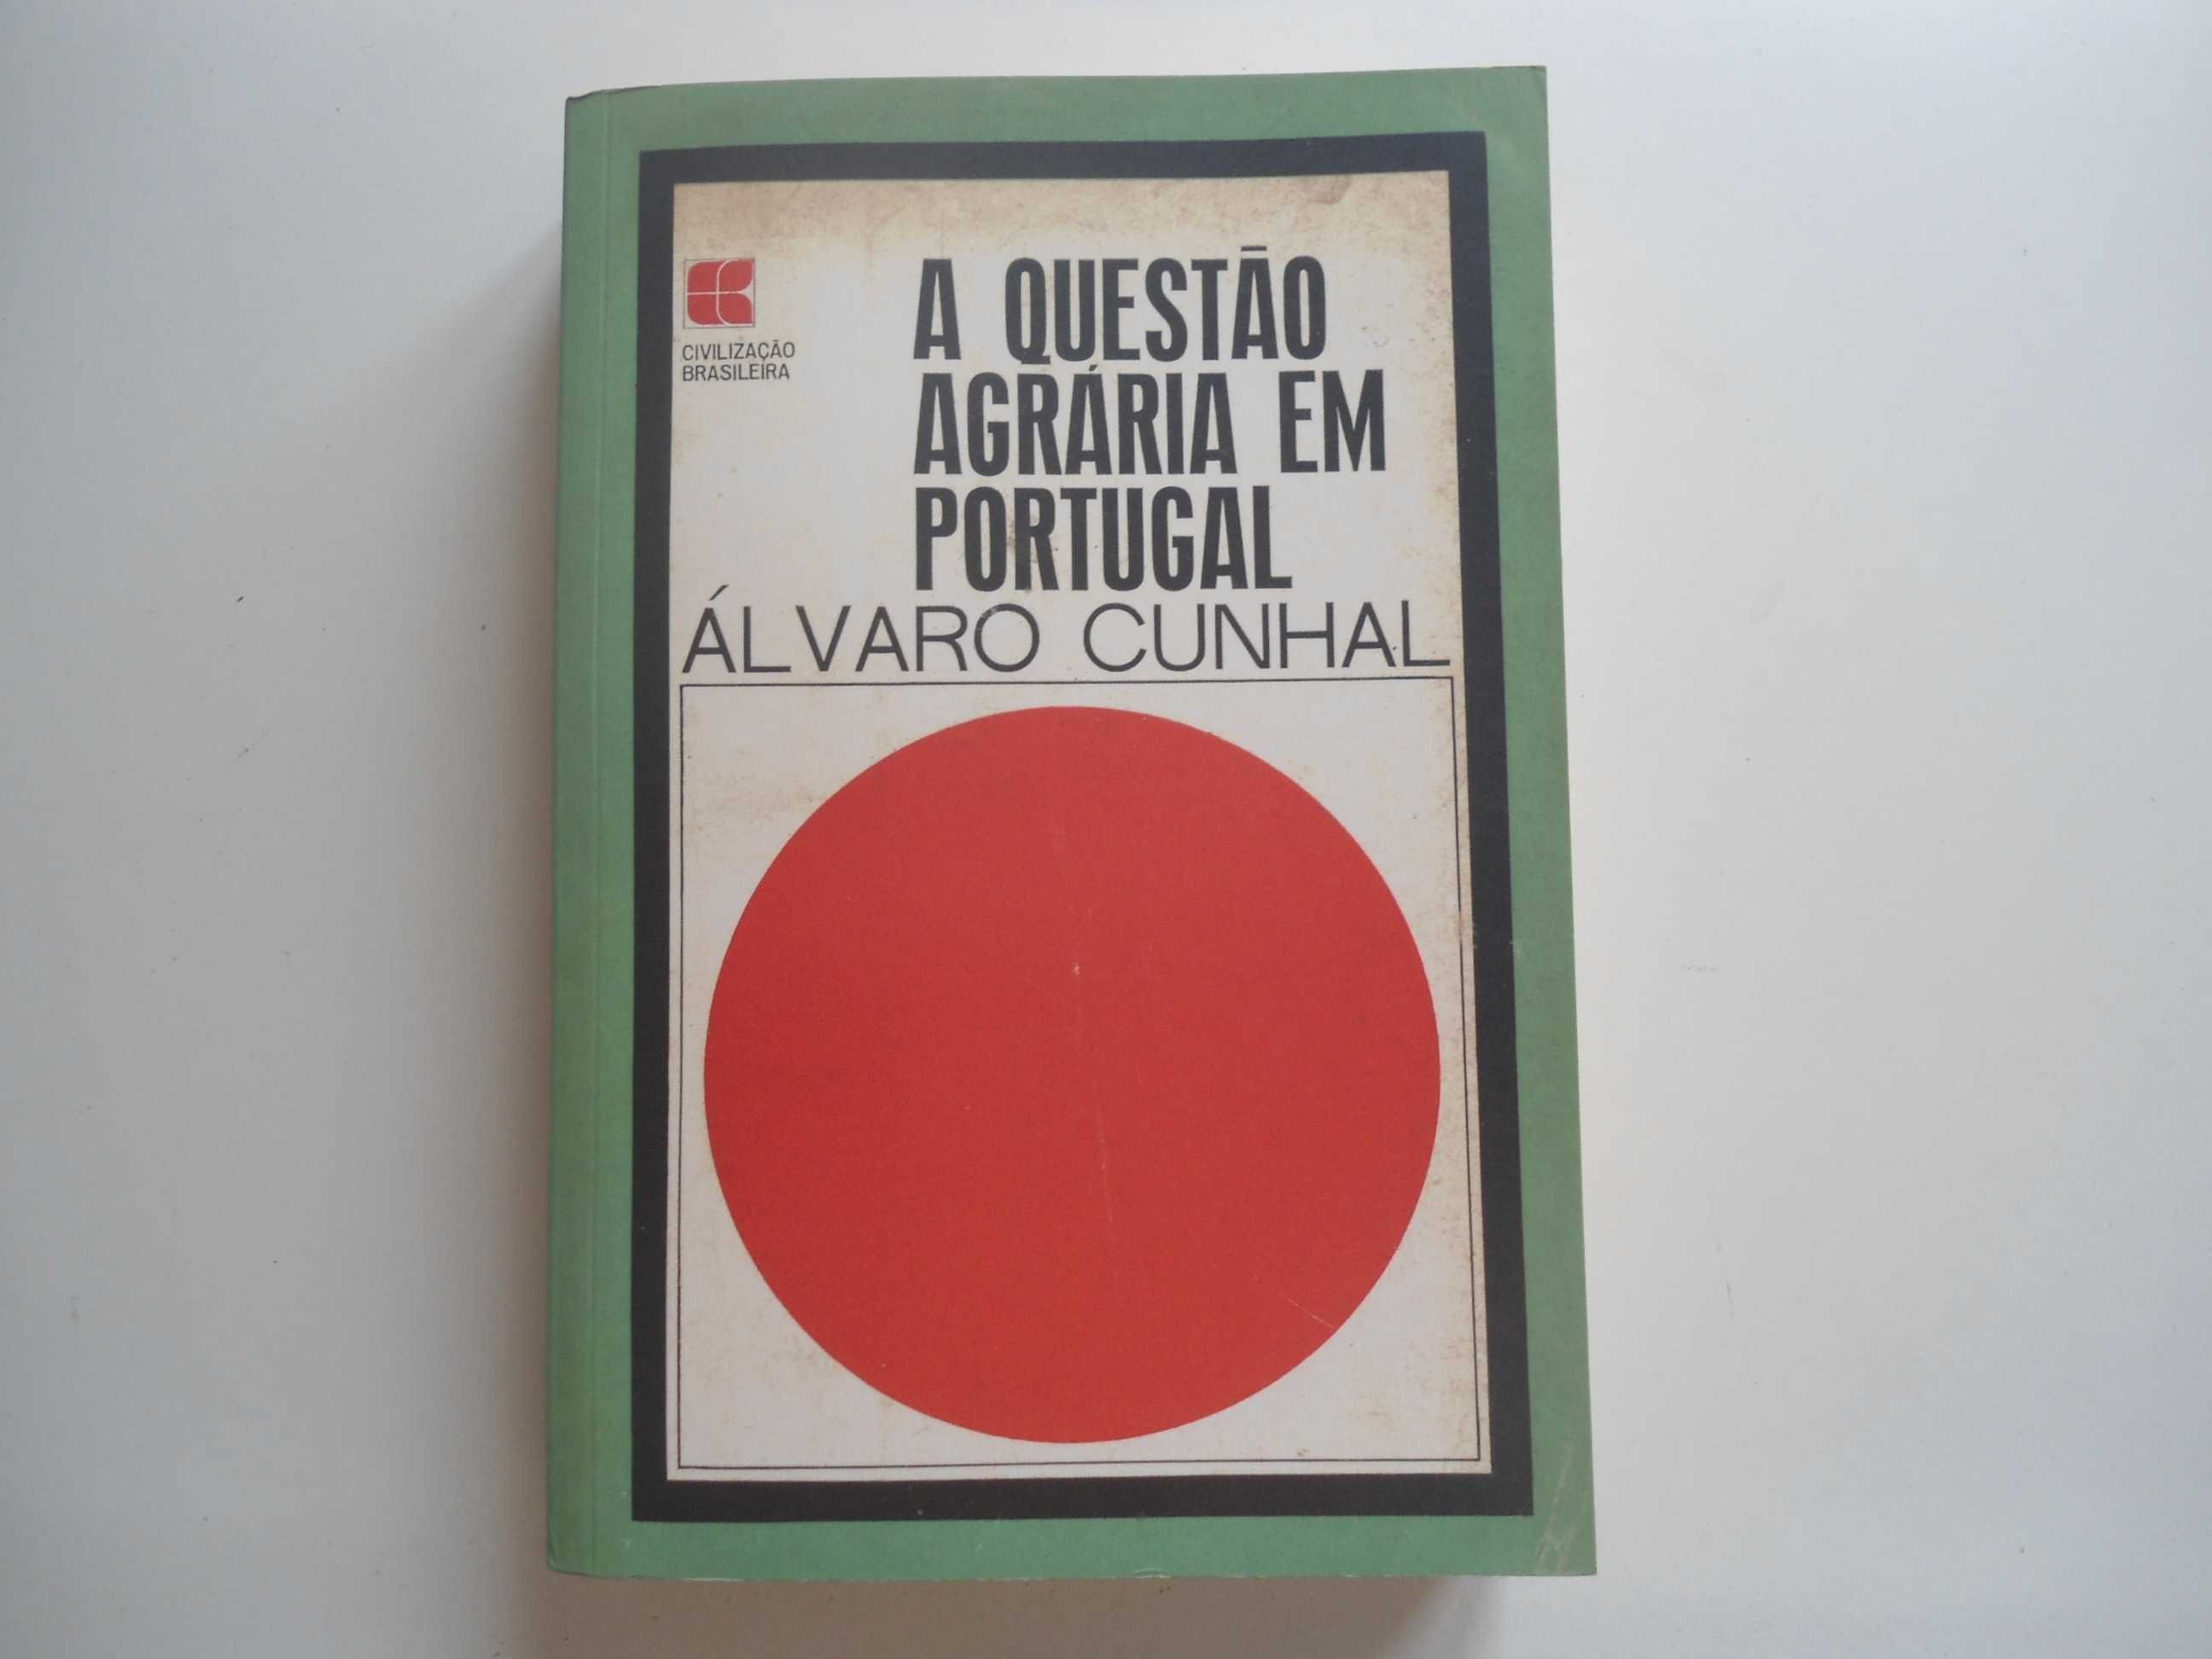 A Questão Agrária em Portugal por Álvaro Cunhal